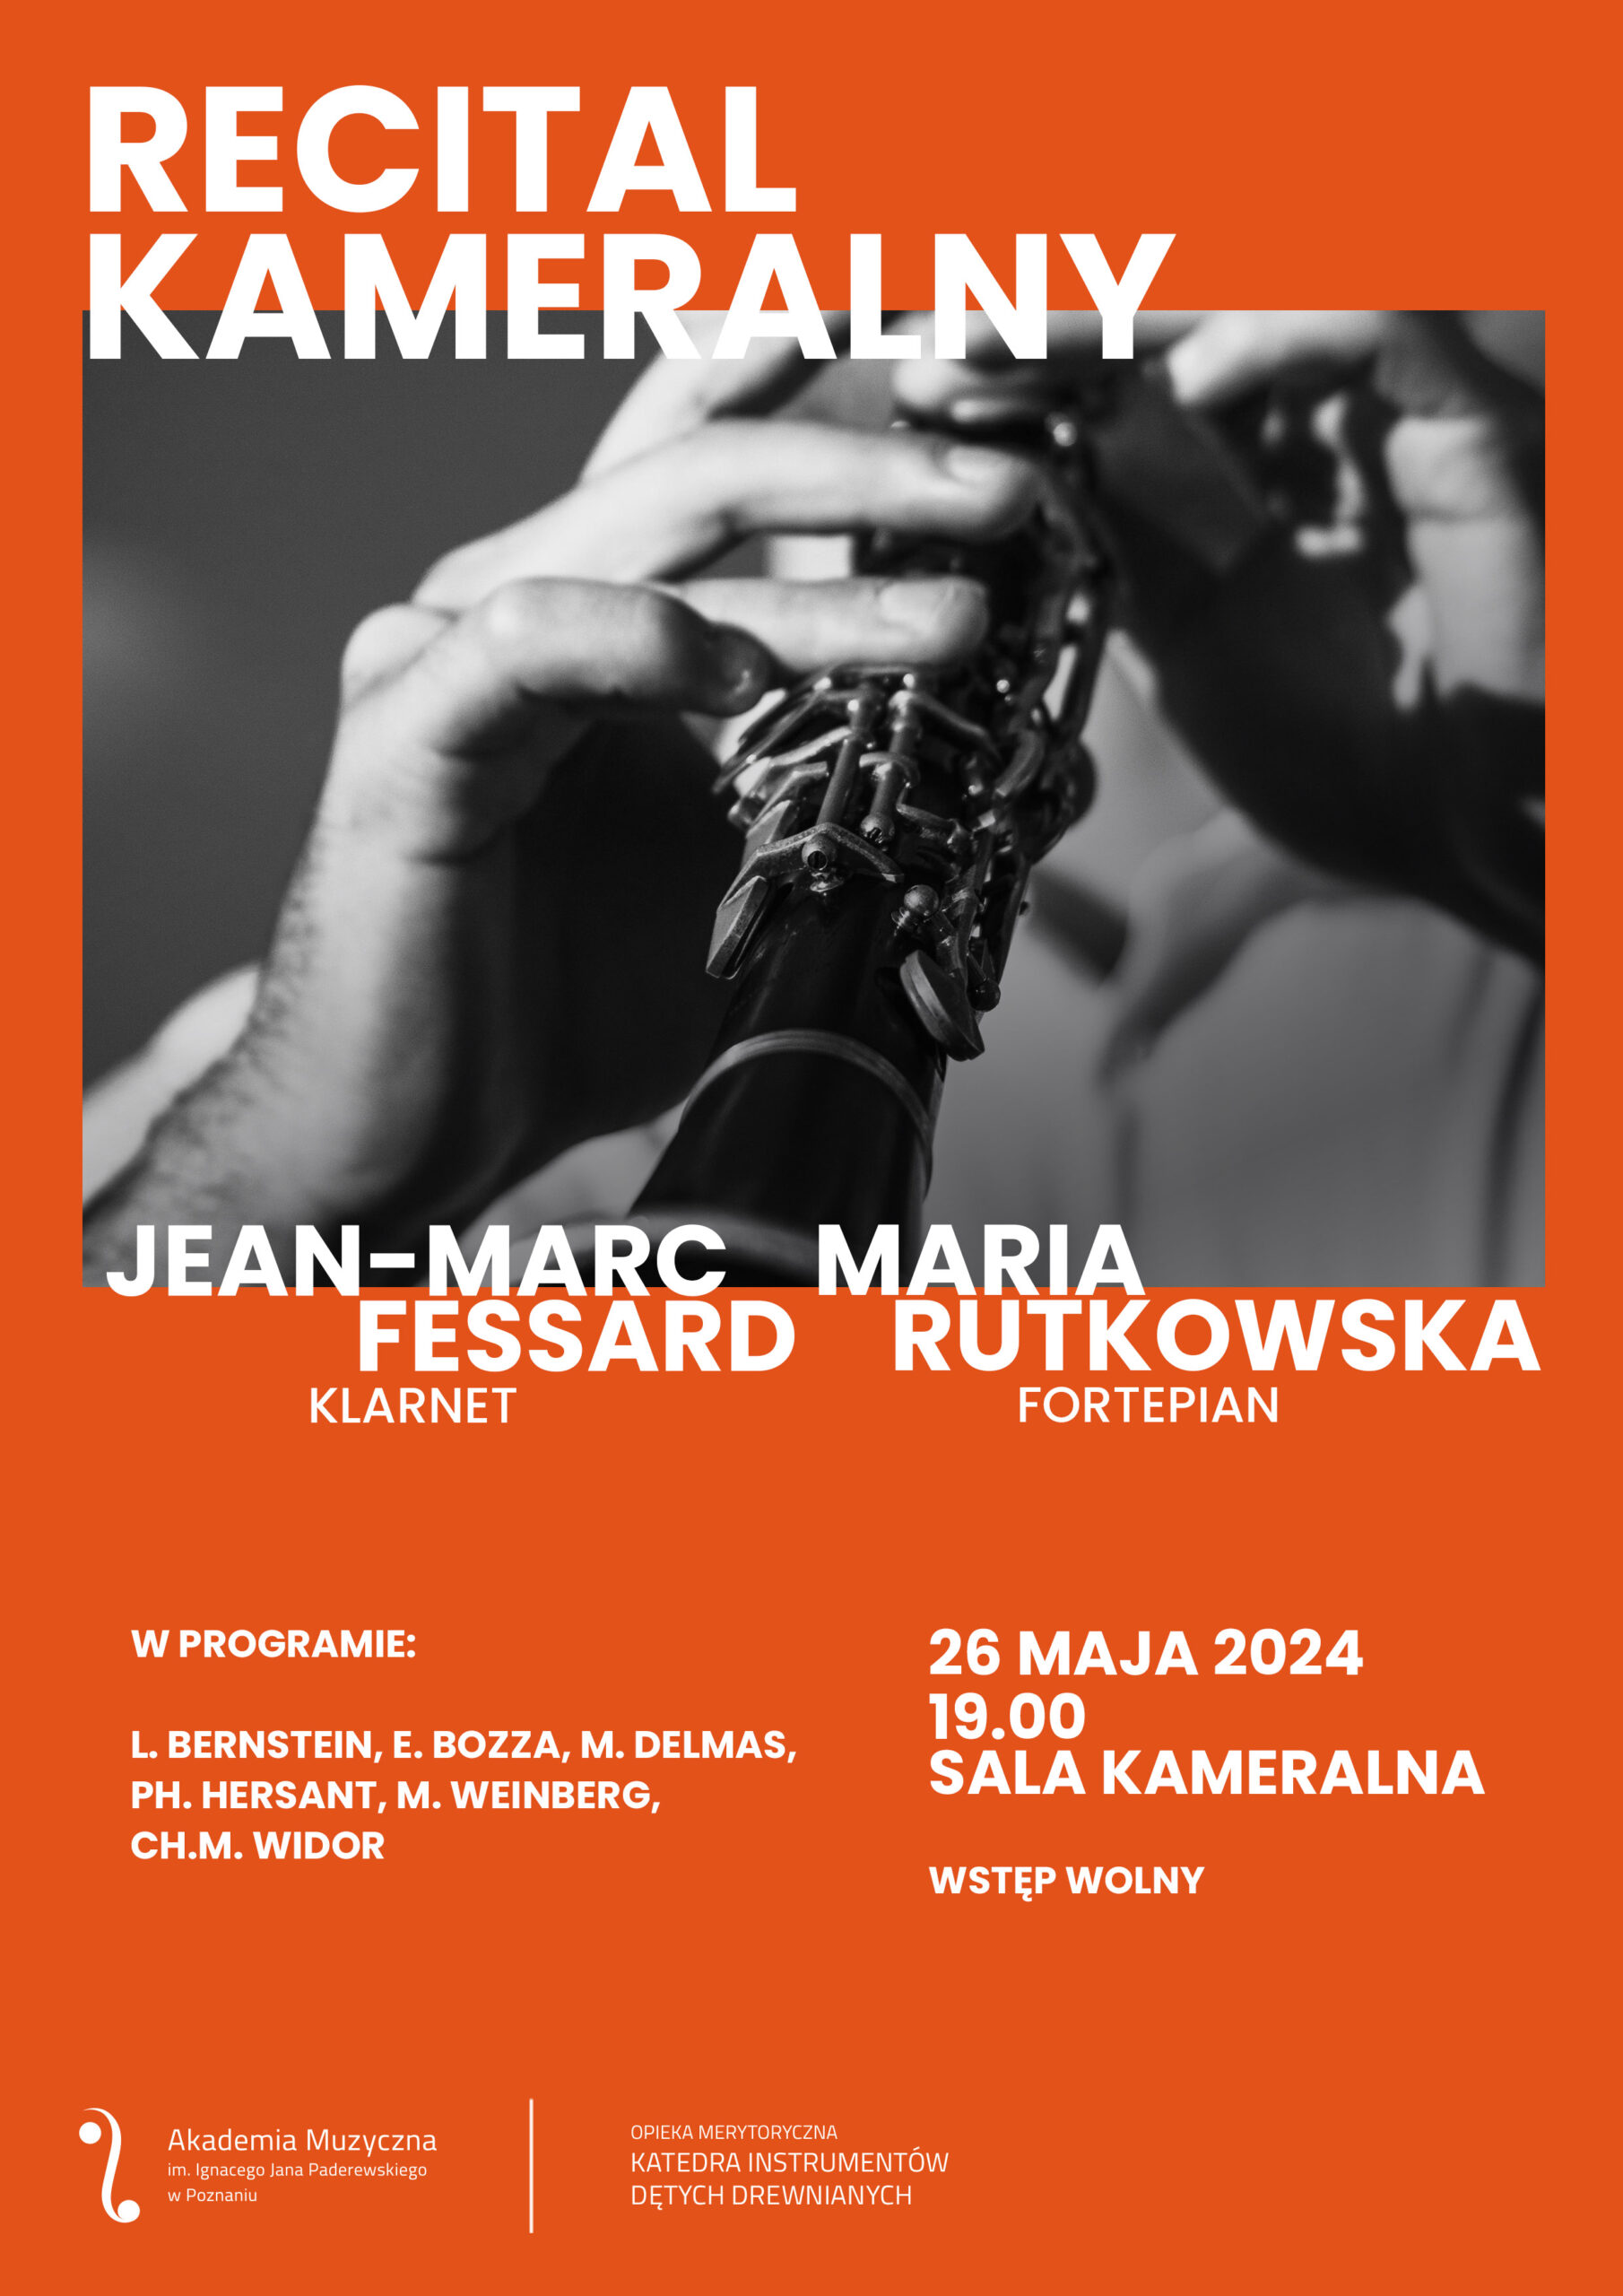 Recital zawiera informacje na temat recitalu klarnetowego Jeana-Marca Fessarda w dniu 26 maja 2024 i zawiera okolicznościową grafikę